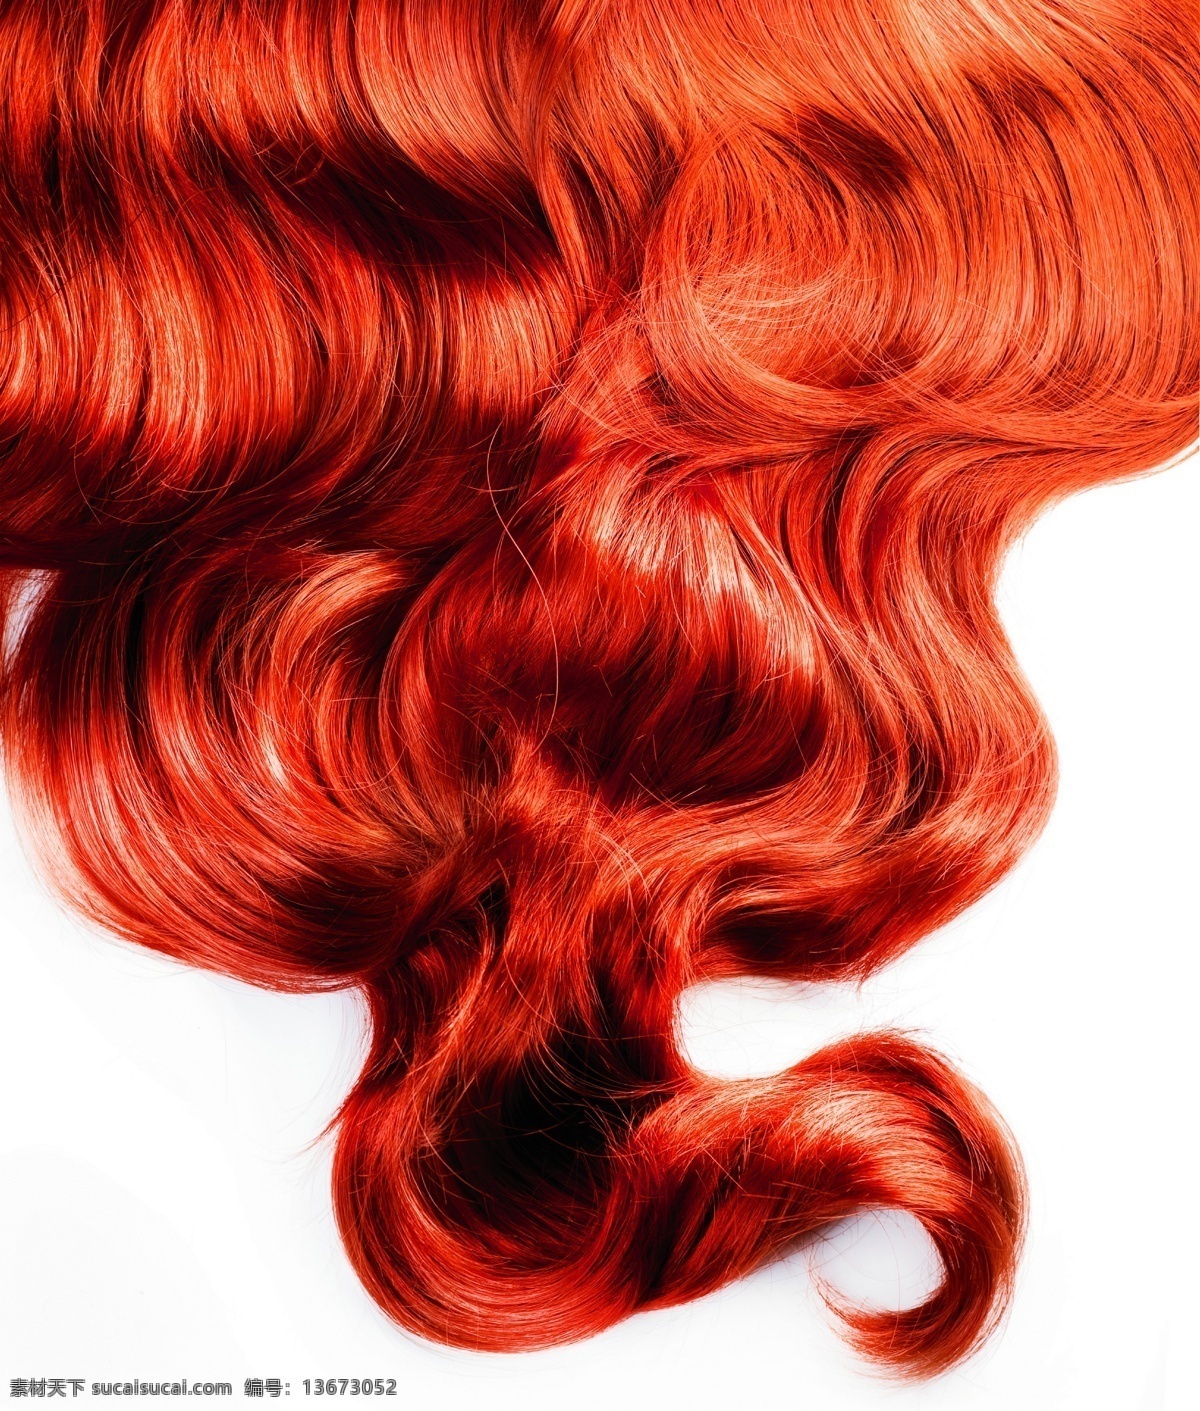 红色 头发 发丝 头发纹理 柔顺的头发 女性头发 头发背景 背景底纹 红色头发 人体器官图 人物图片